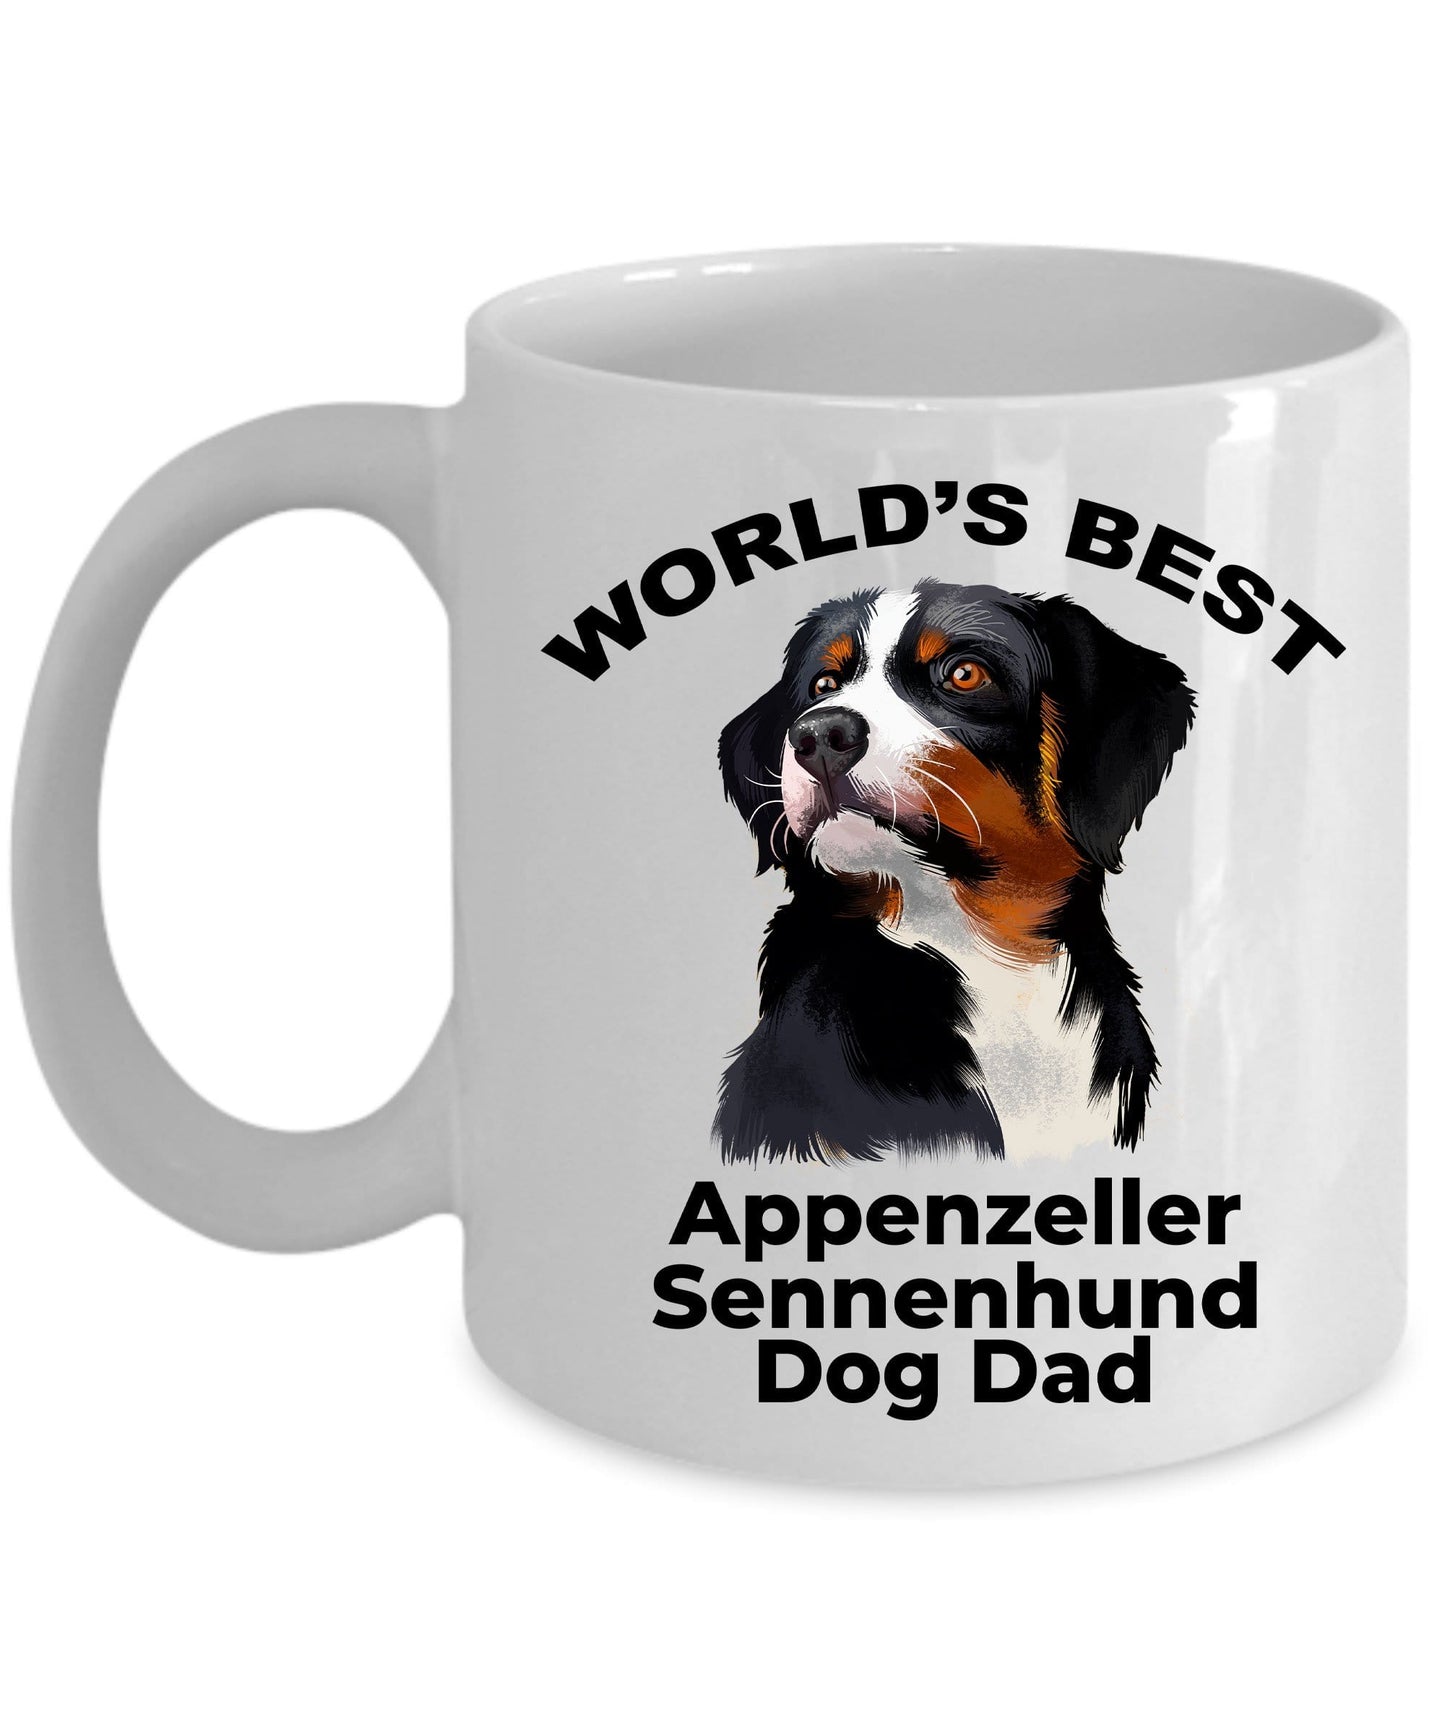 Appenzeller Sennenhund Best Dog Dad Coffee Mug